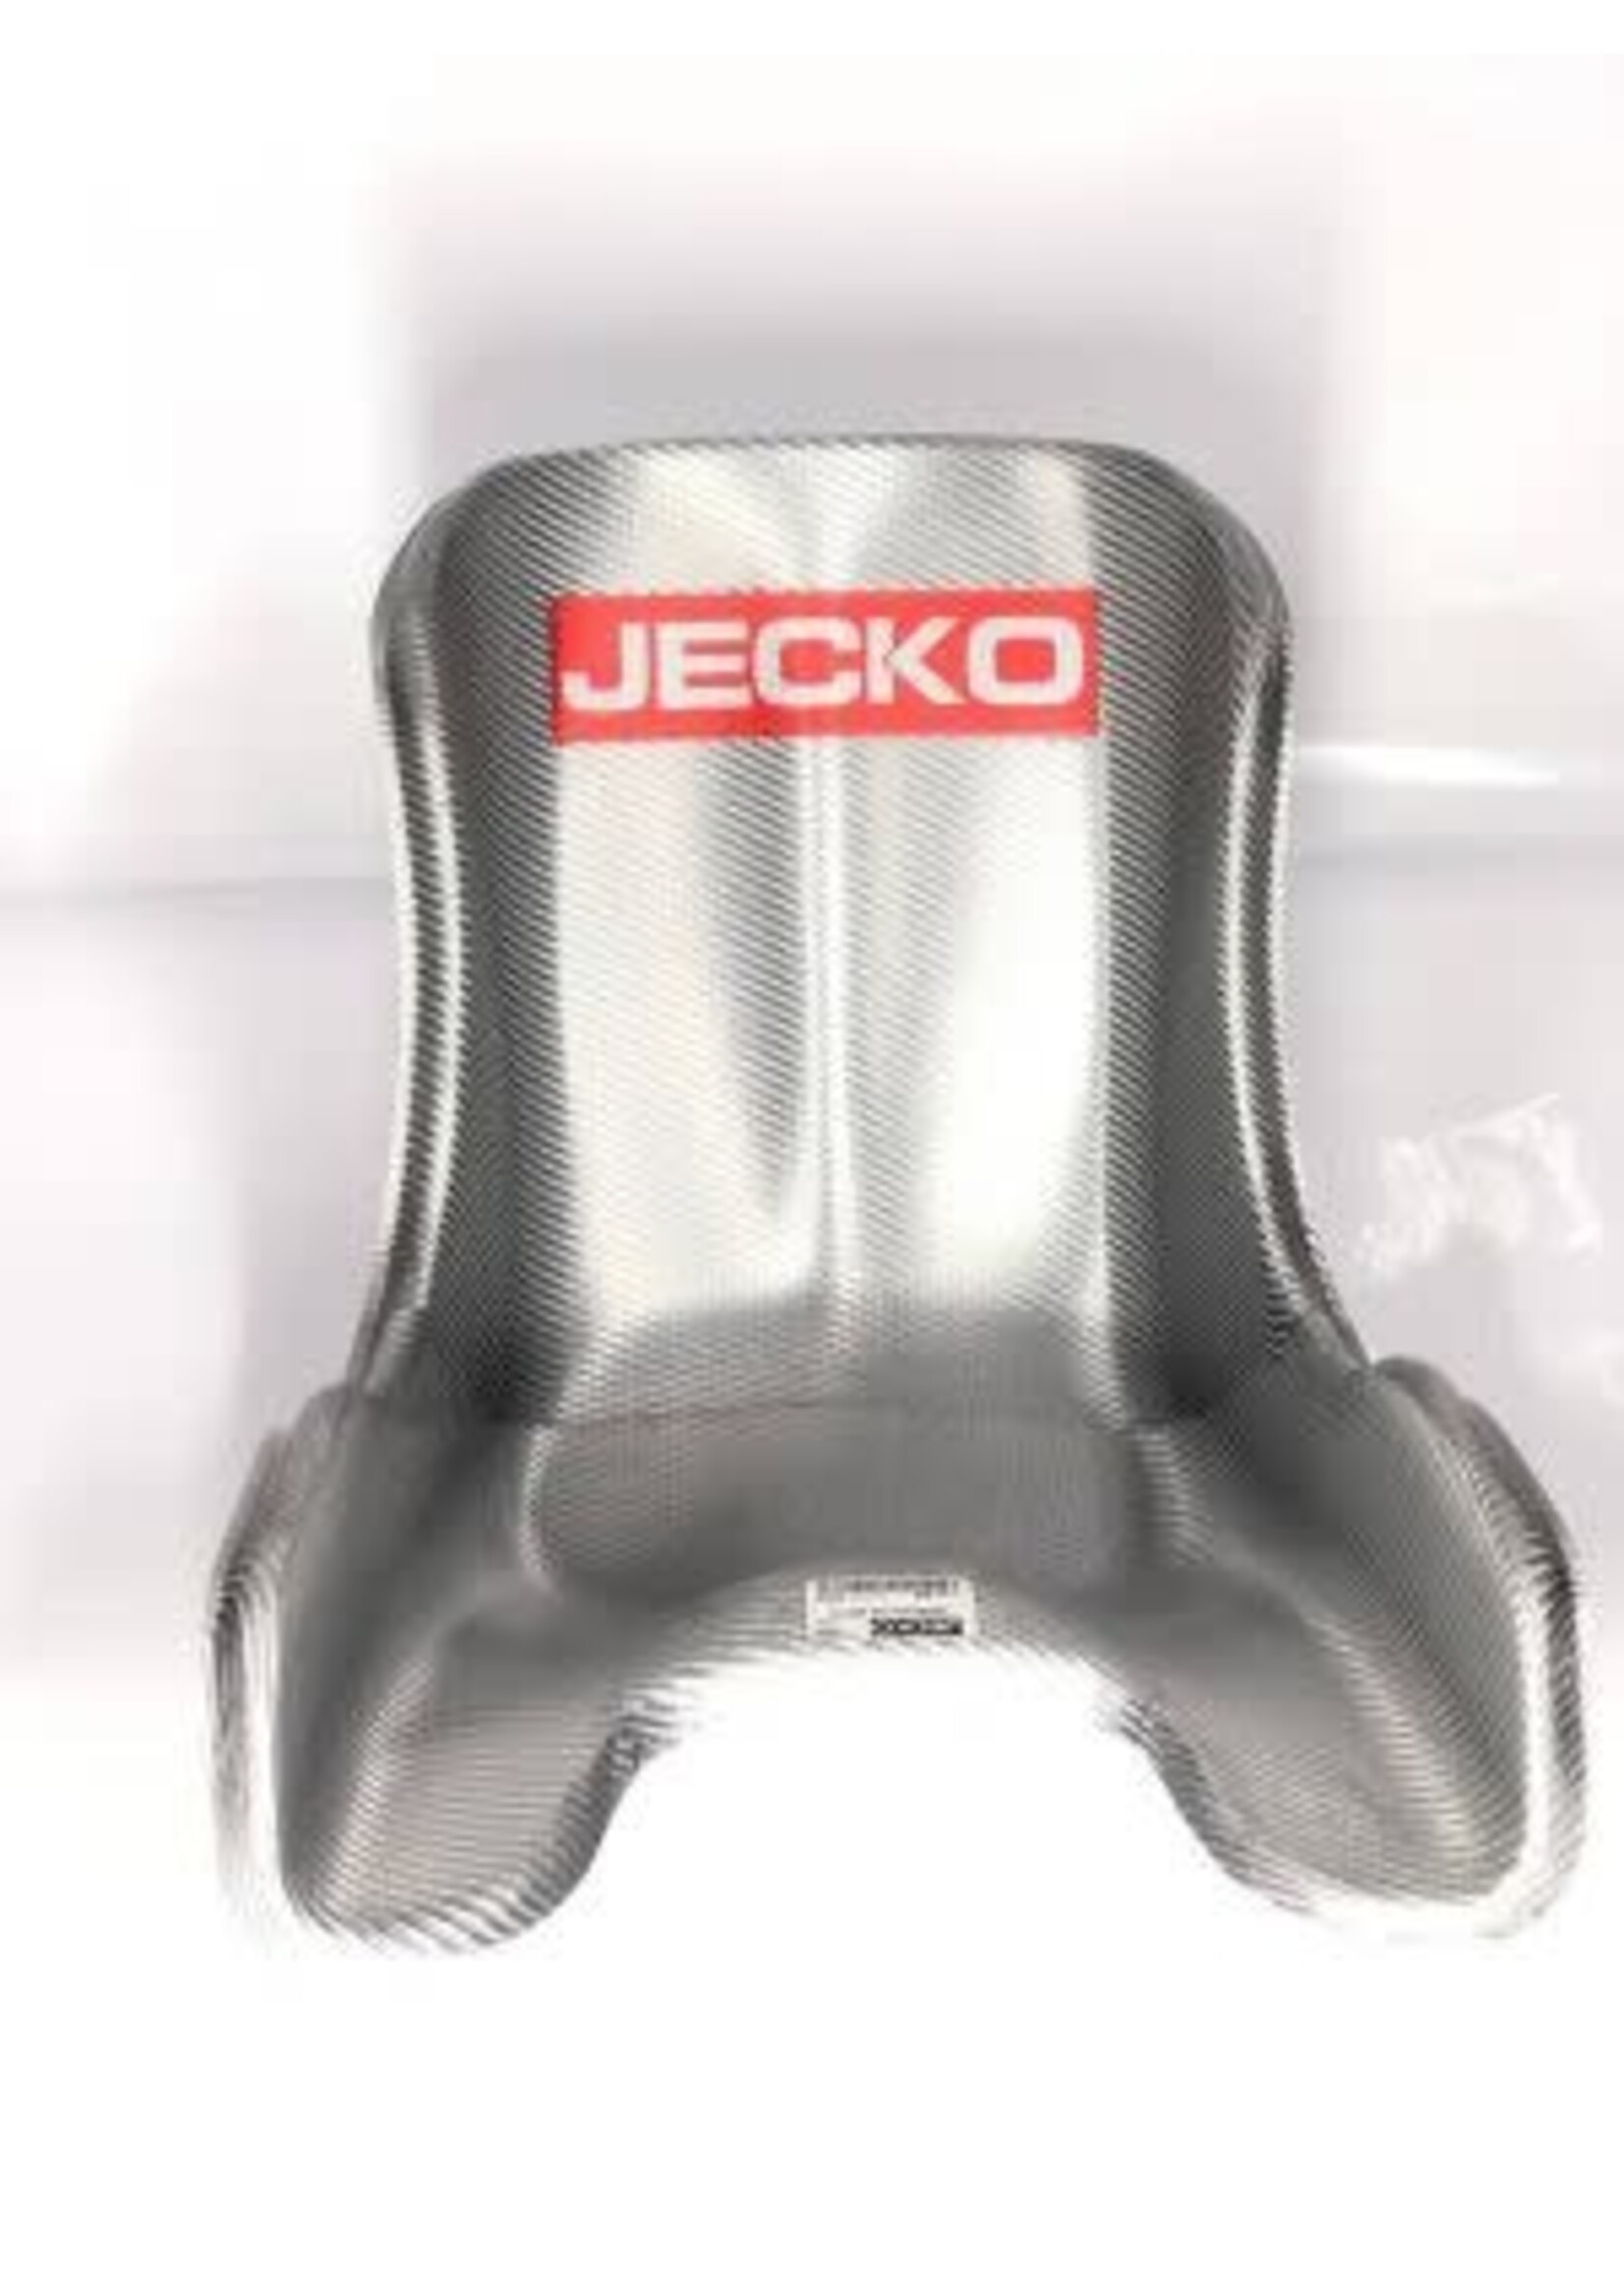 jecko JECKO BH Seat